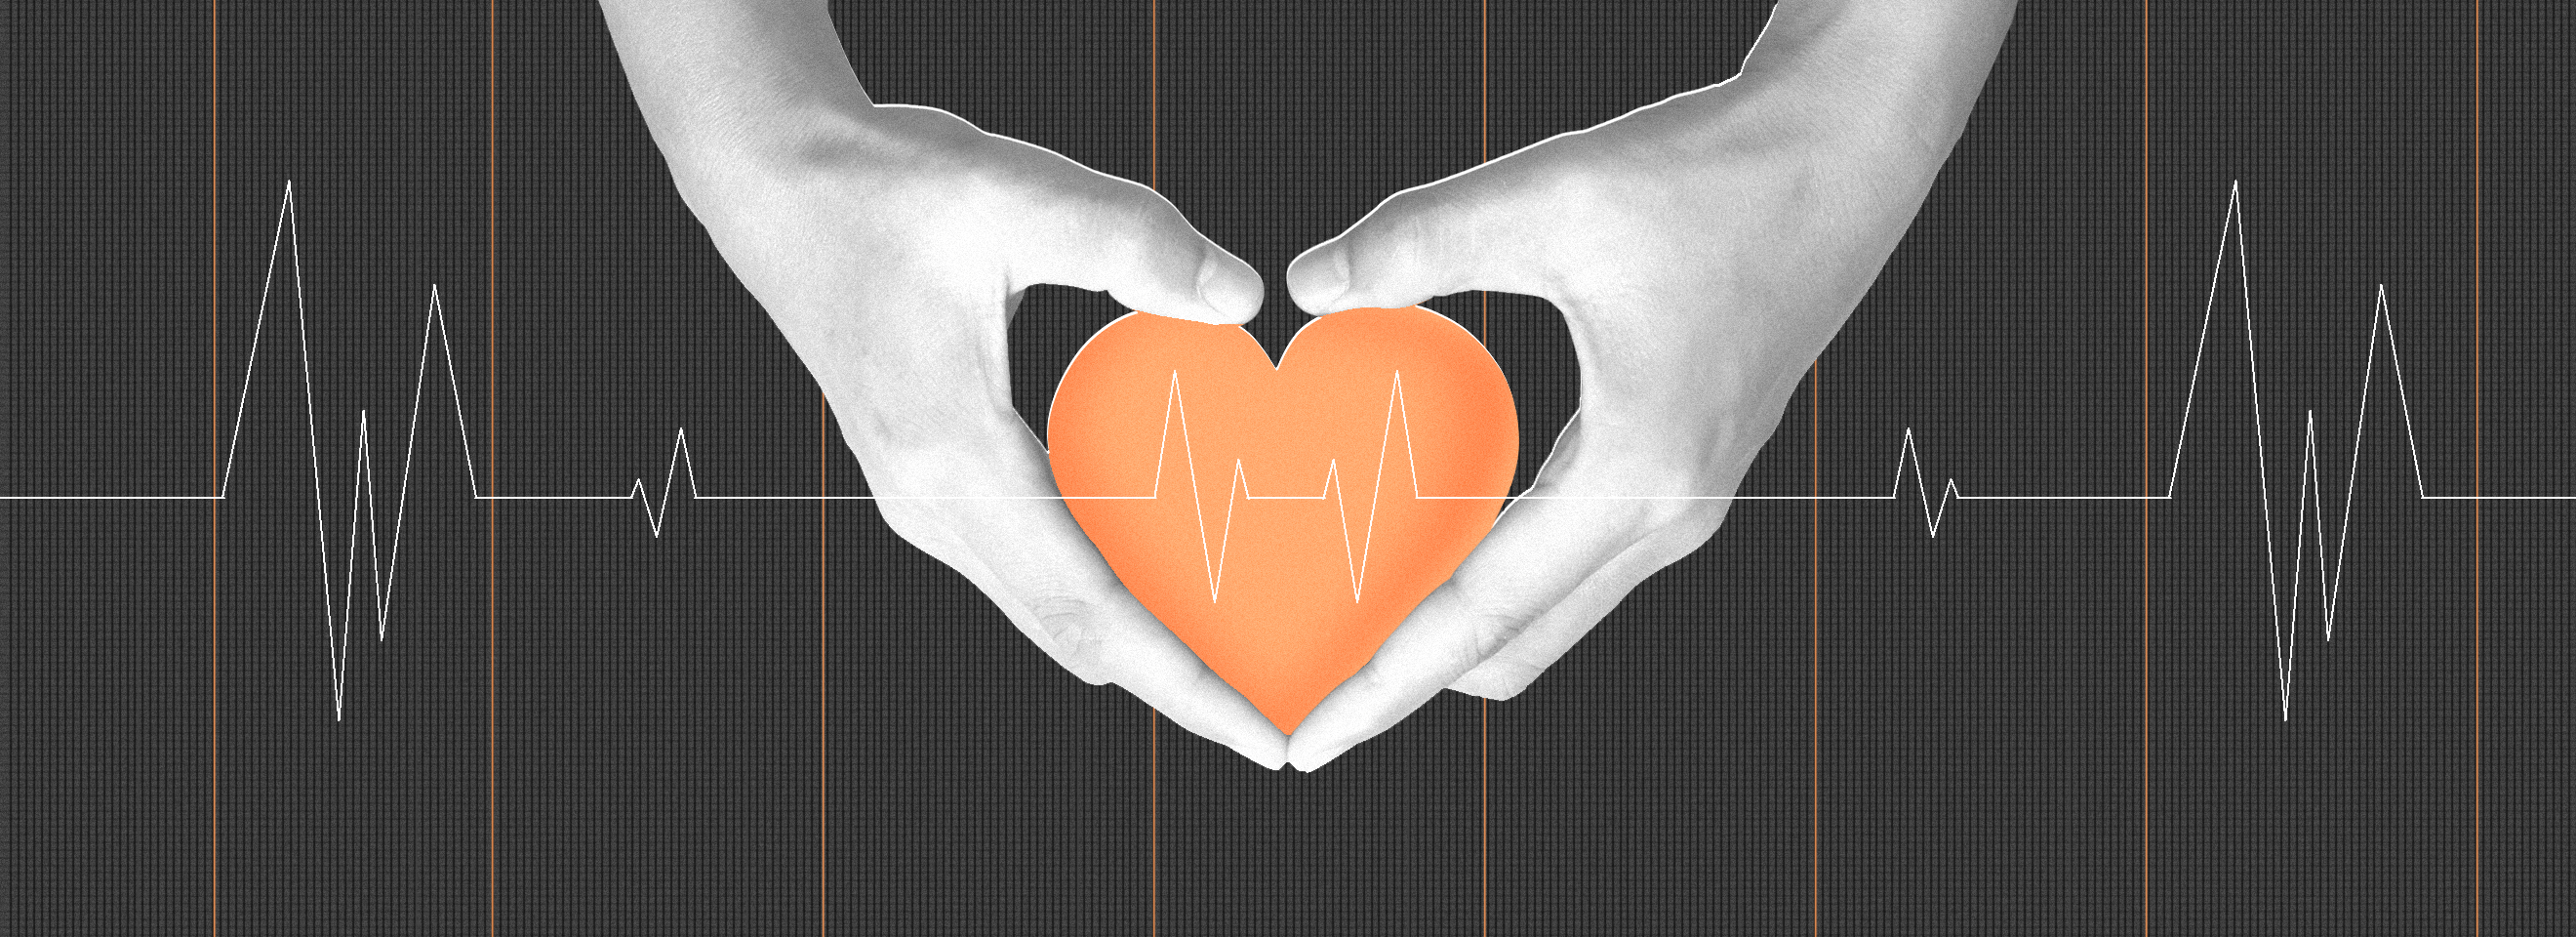 Полноразмерная обложка поста на тему: Как укрепить сердце и какие продукты улучшат его работу